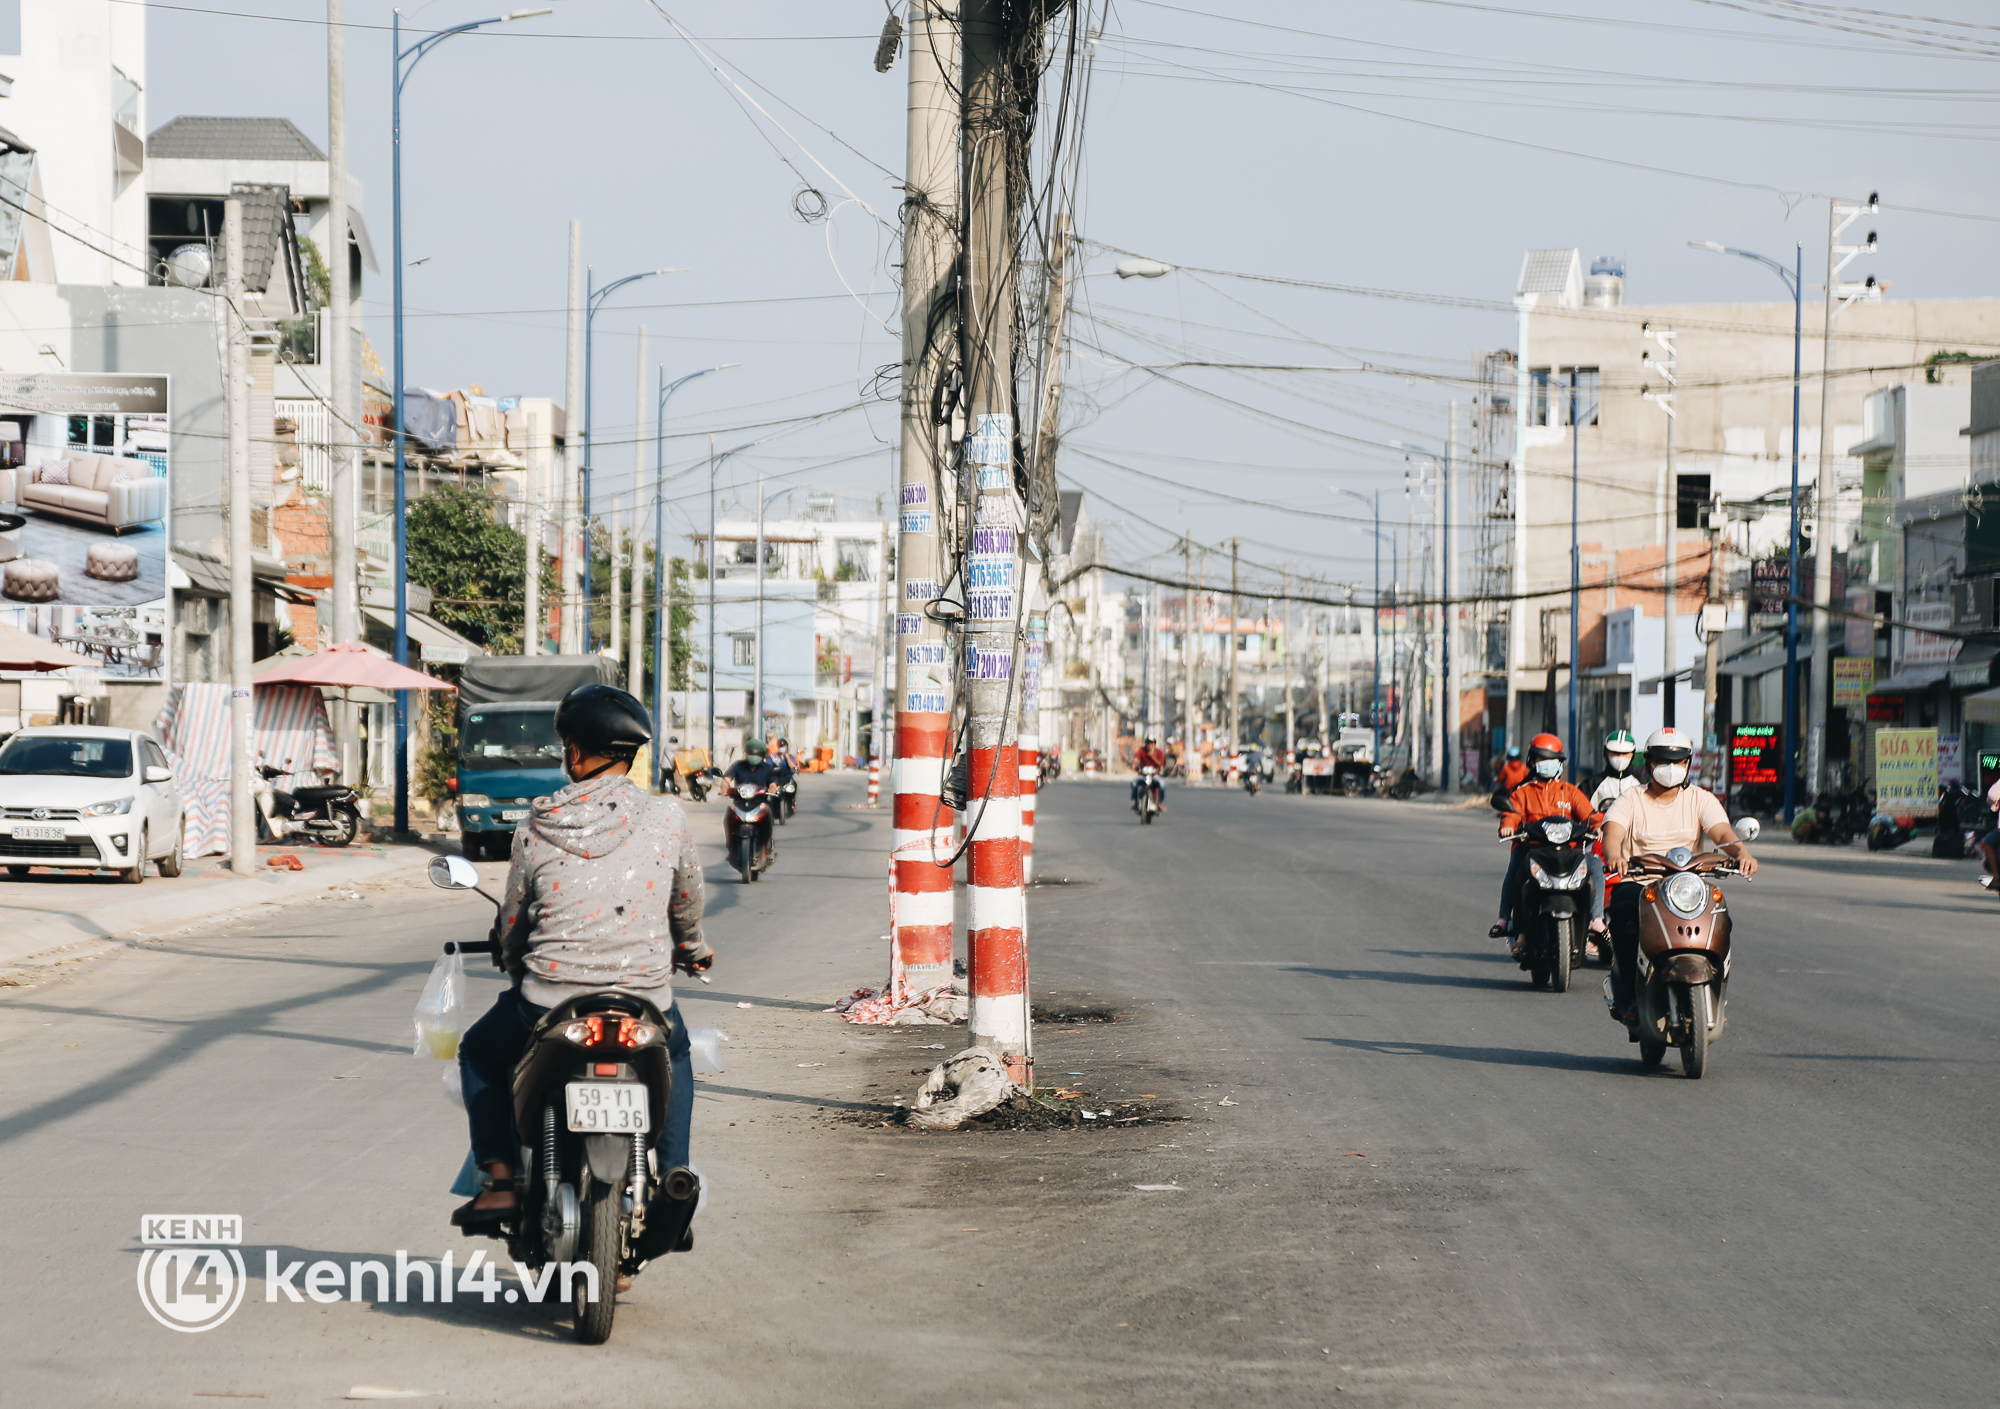 Hàng trăm cột điện bị bỏ quên giữa đường ở Sài Gòn, người dân nín thở luồn lách - Ảnh 13.